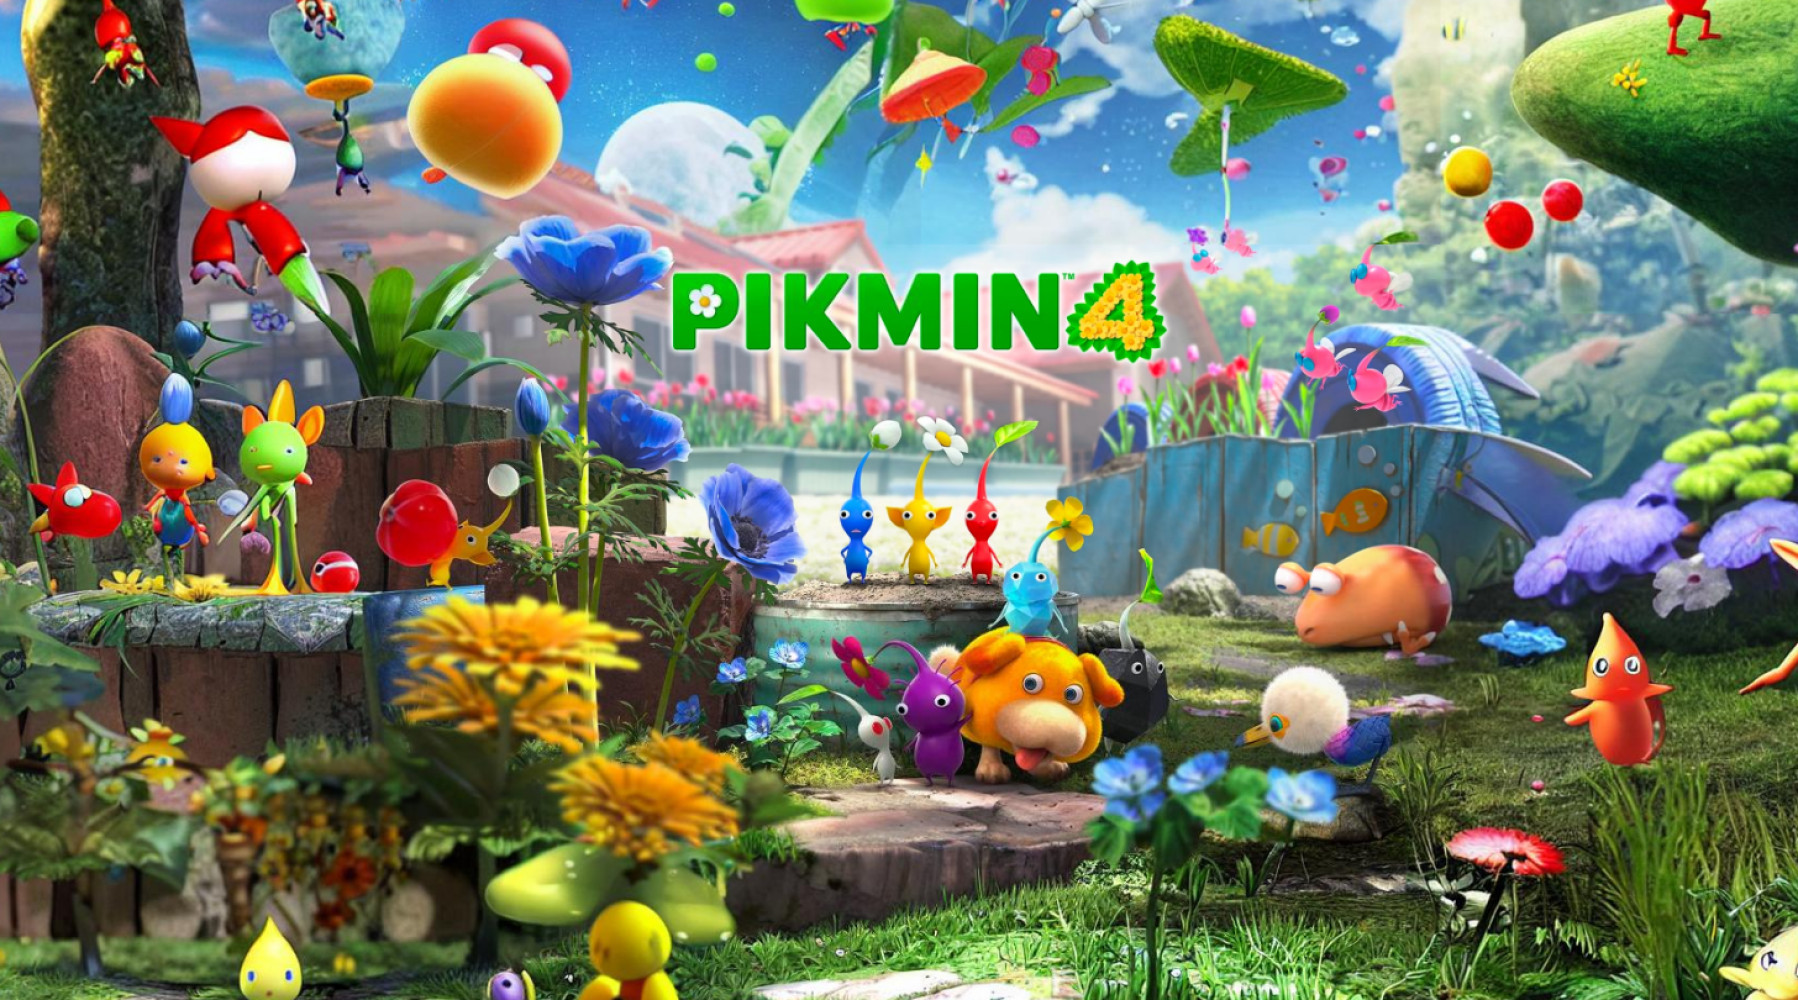 Es wurde ein neuer Trailer zu Pikmin 4 veröffentlicht, in dem die Eigenschaften der verschiedenen Pikmin-Typen vorgestellt werden